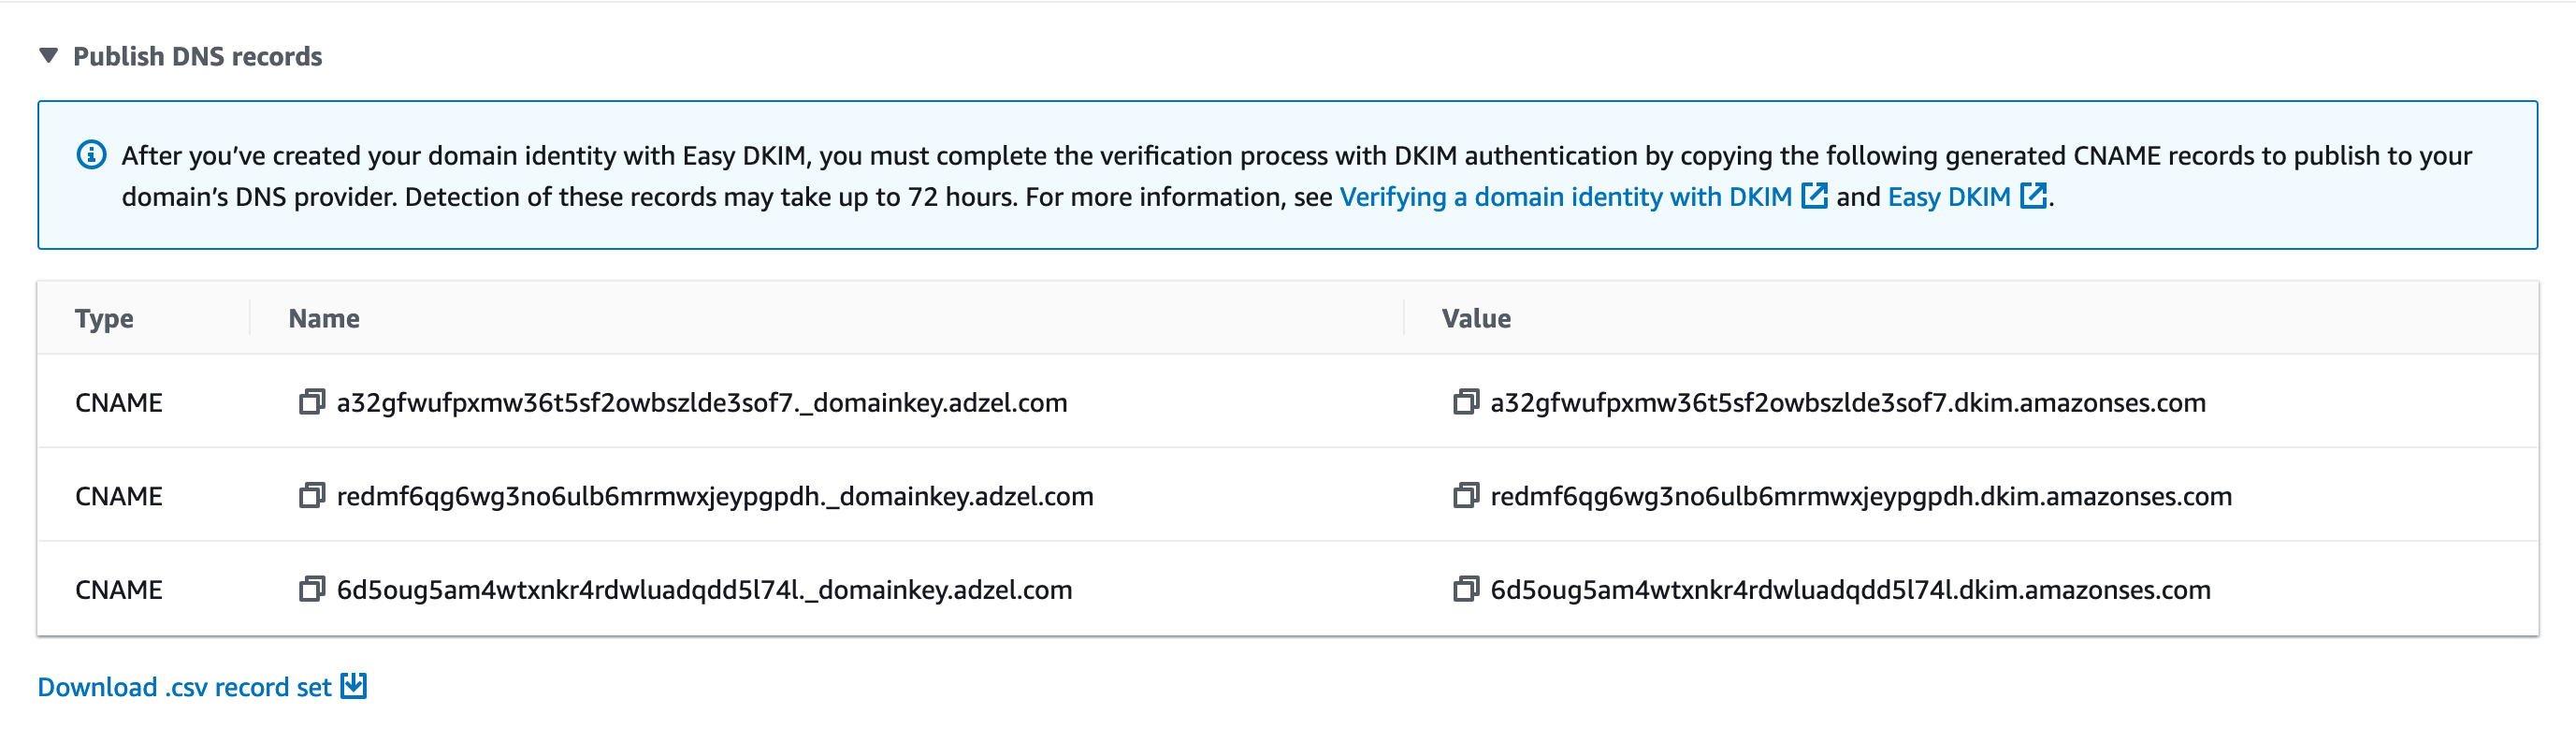 
                                        자격 증명에 대한 세부 정보 페이지의 DKIM 섹션입니다. 가상의 세 CNAME 레코드가 표시됩니다.
                                    